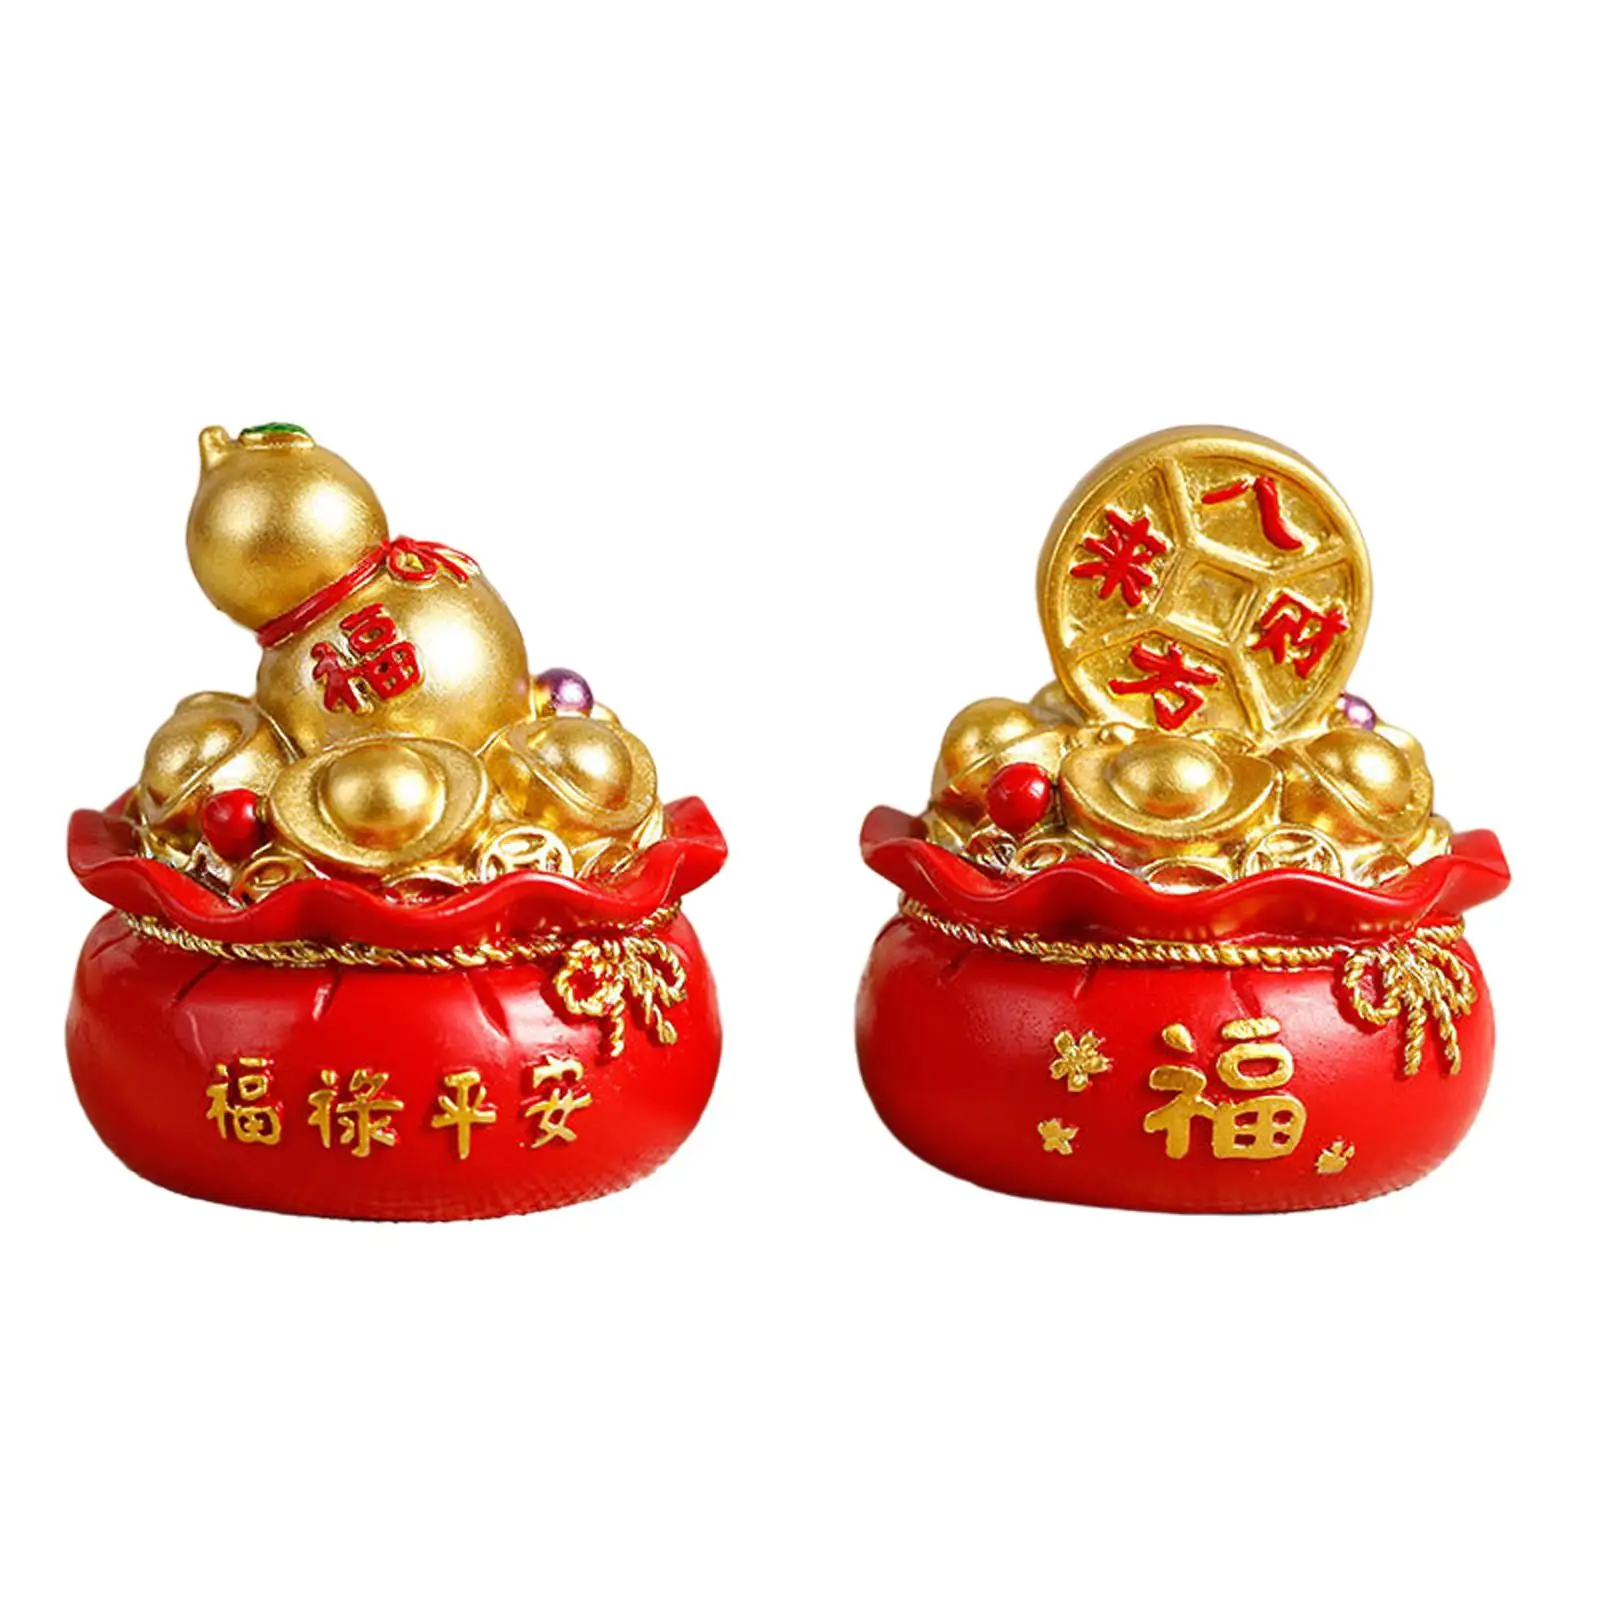 

Сумка для денег на удачу, традиционная китайская фигурка фэн-шуй, украшение, привлекательный торт, наряд для богатства